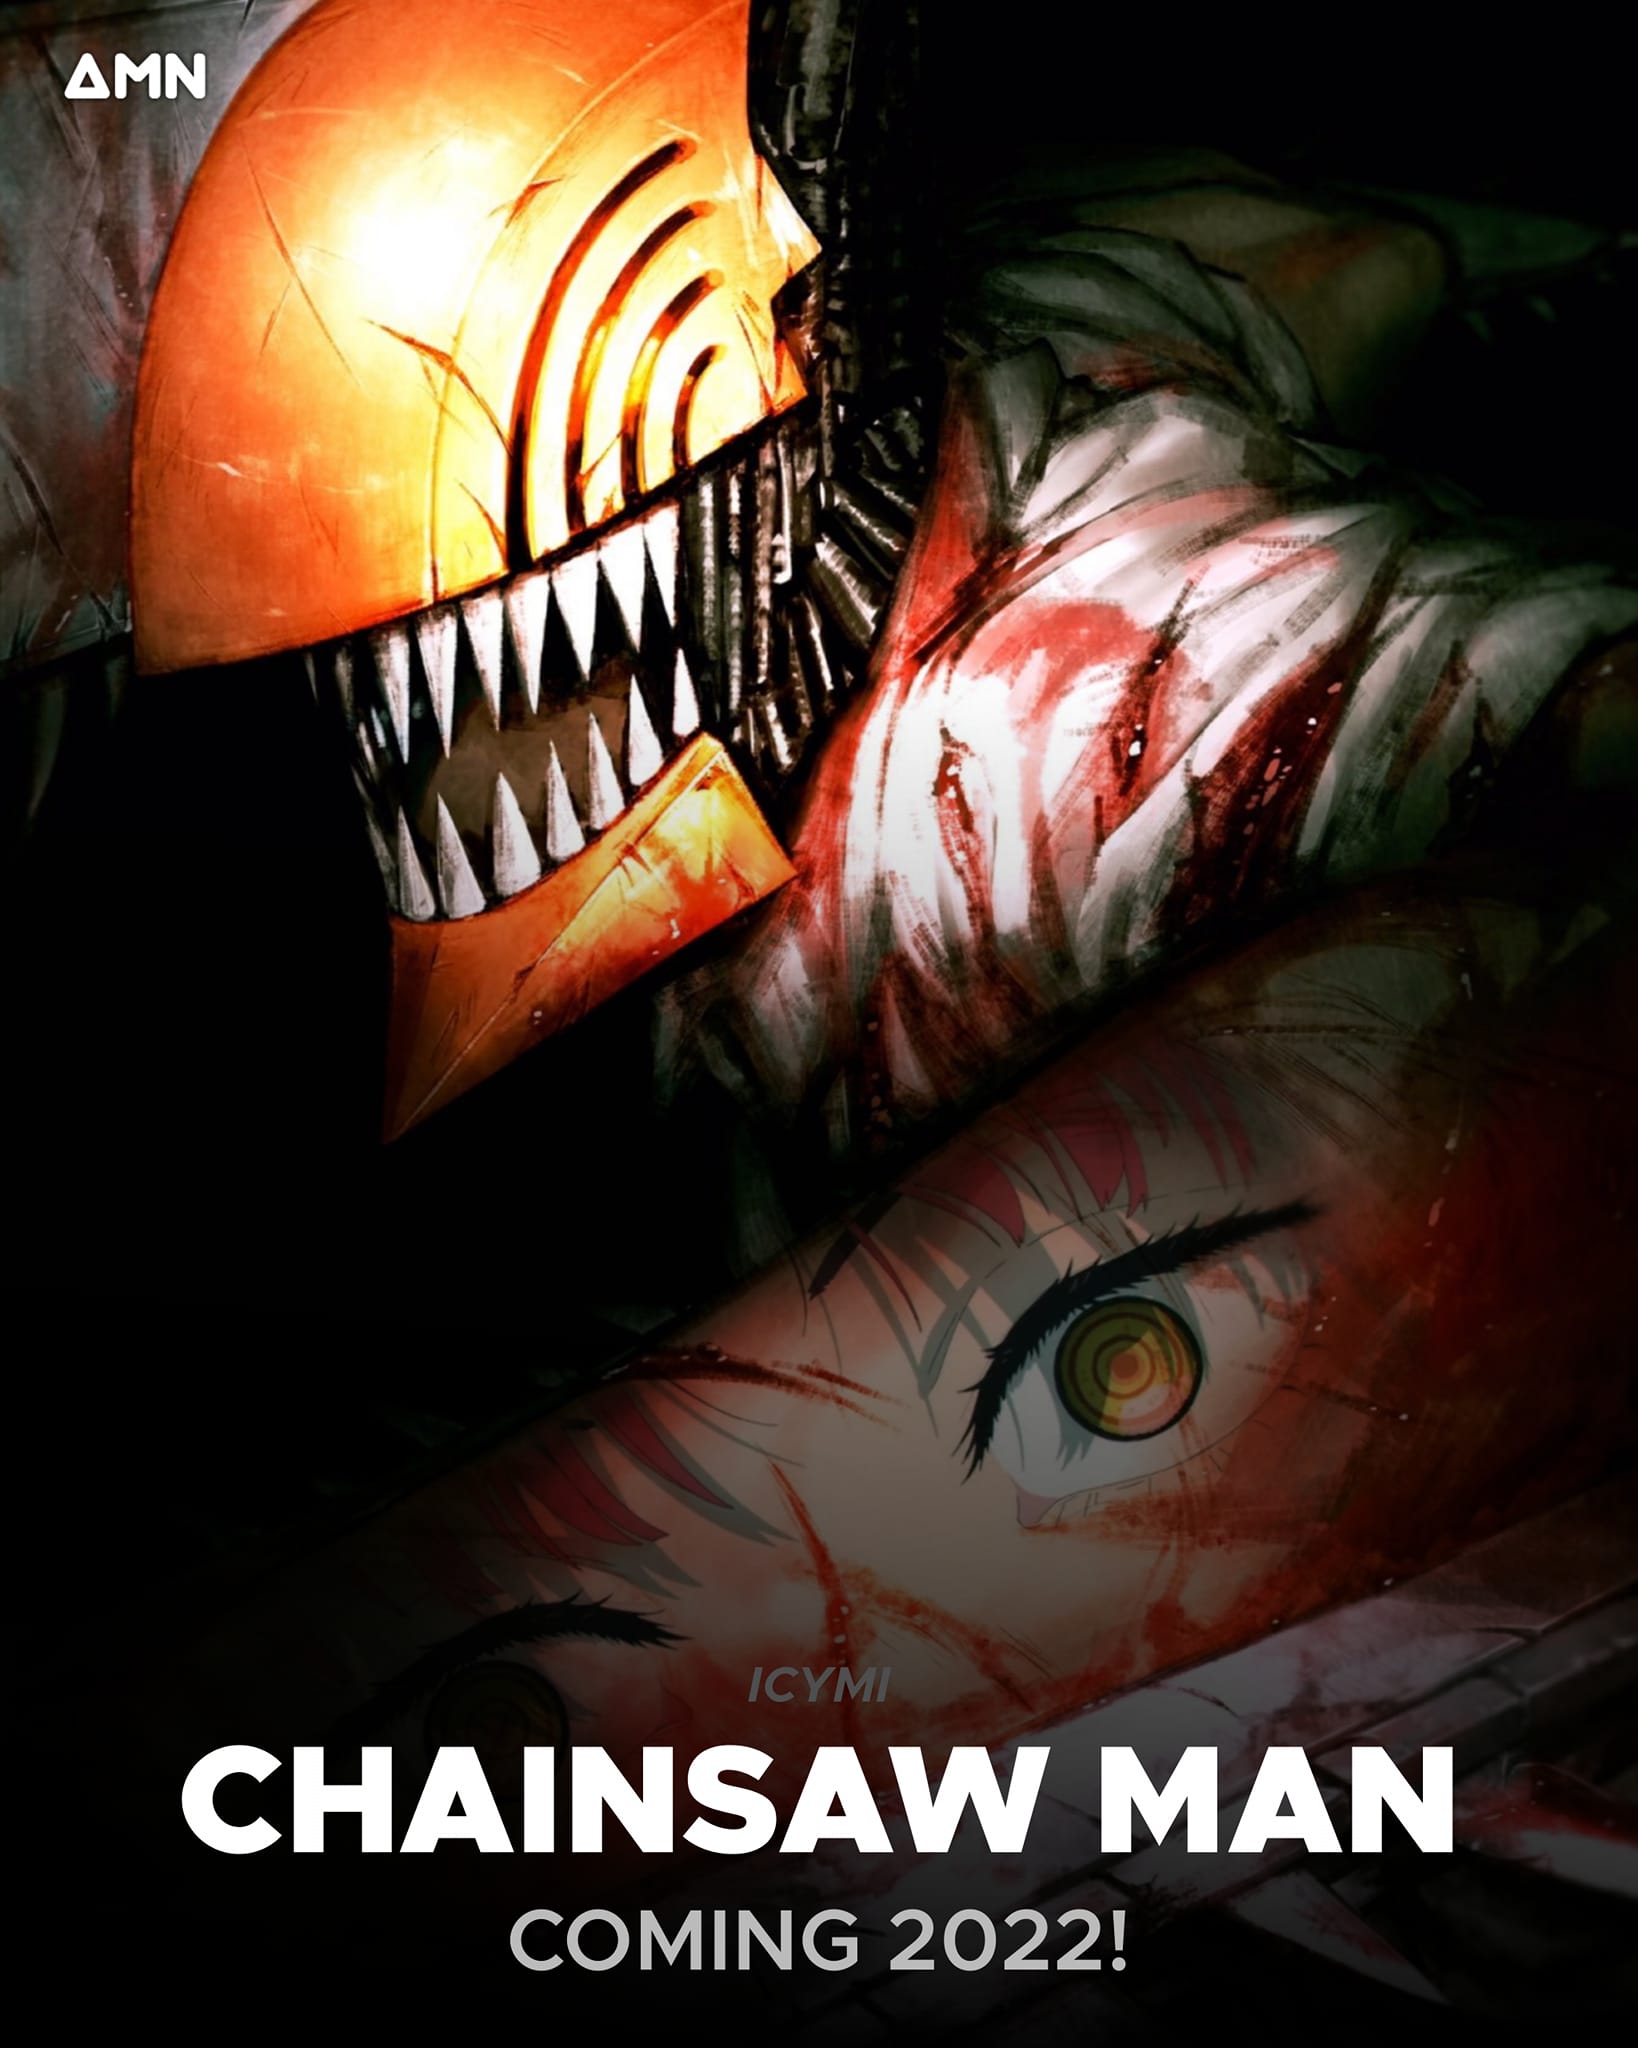 Chainsaw Man là một trong những bộ truyện tranh đang làm mưa làm gió trong cộng đồng manga. Không chỉ có nội dung hấp dẫn, Chainsaw Man còn sở hữu những họa sĩ tài năng, thể hiện mọi chi tiết đến từng pixel. Hãy cùng khám phá thế giới đầy bạo lực nhưng cũng không kém phần thú vị của Chainsaw Man!